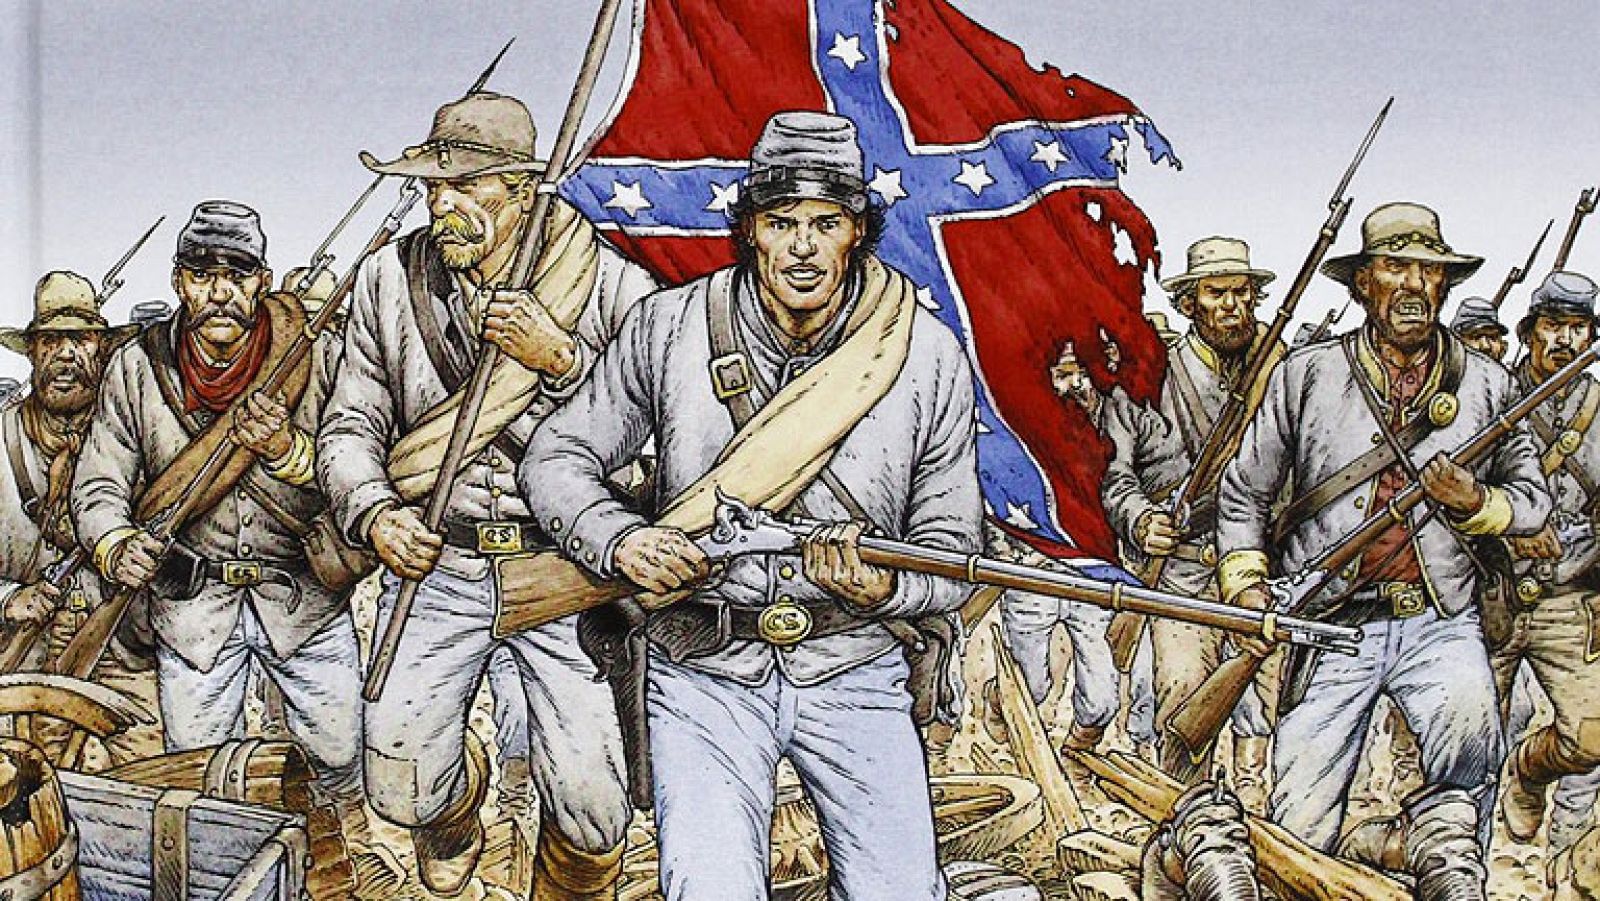 Fragmento de la portada de 'La juventud de Blueberry: Gettysburg'